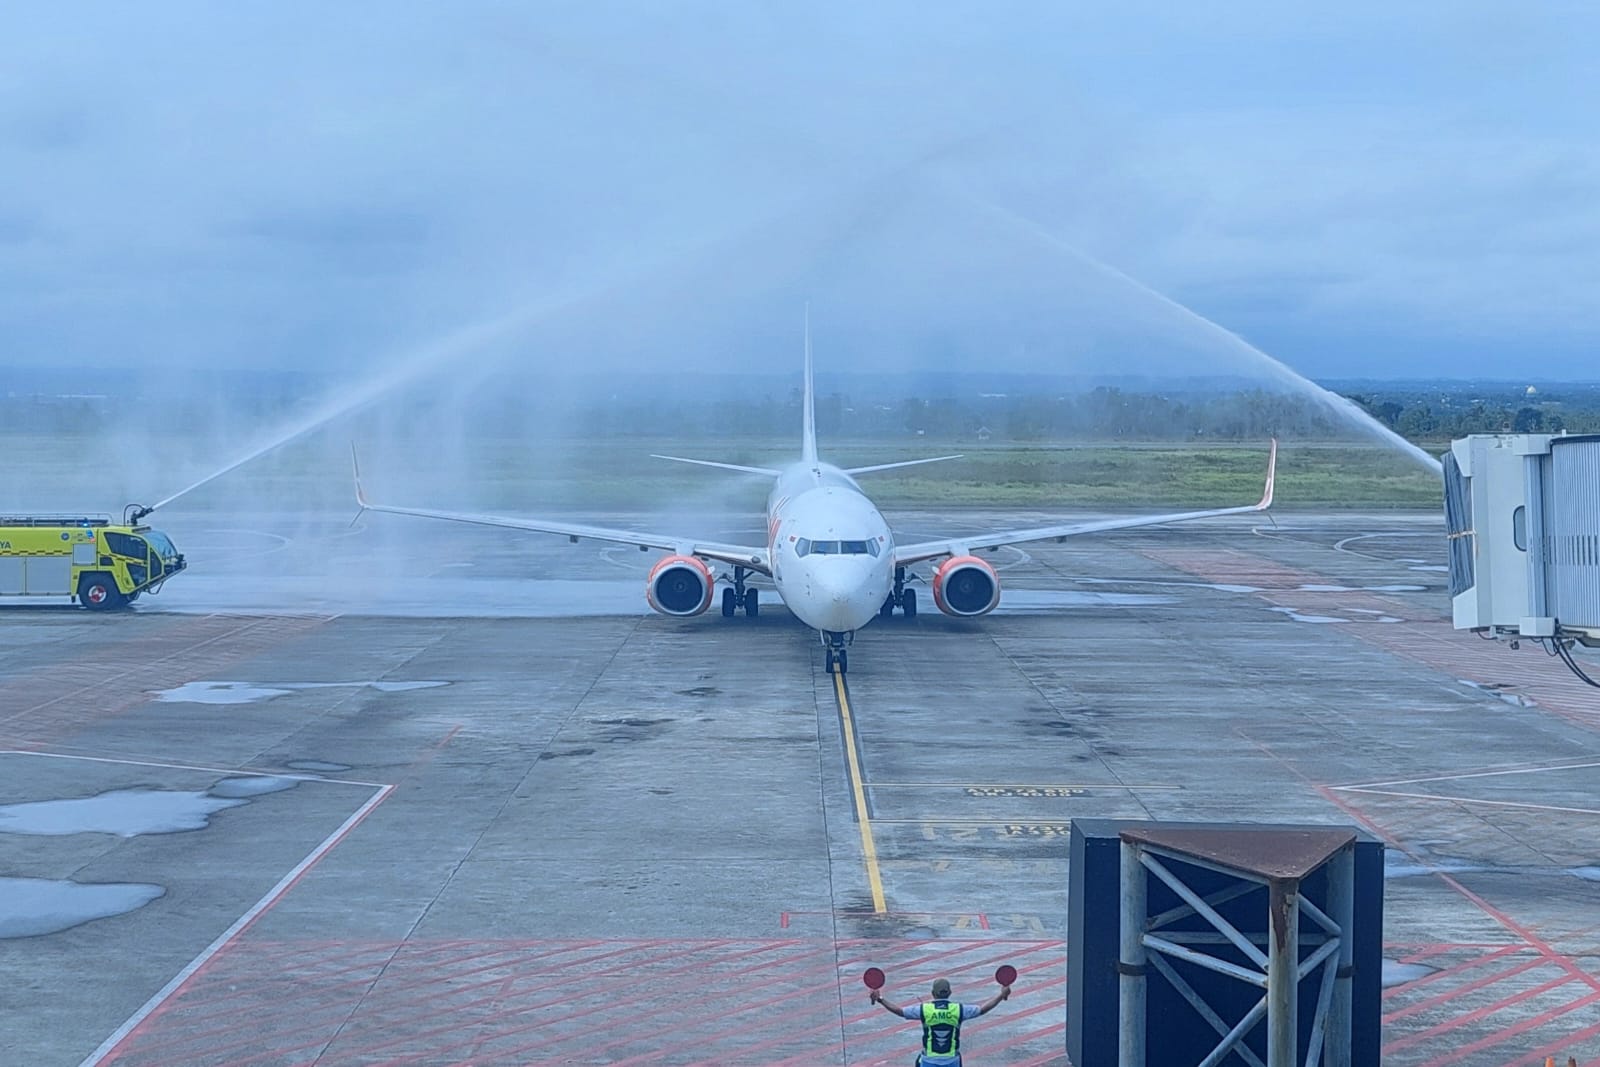 Bandara Internasional Lombok Buka Rute Penerbangan Baru Lombok-Balikpapan